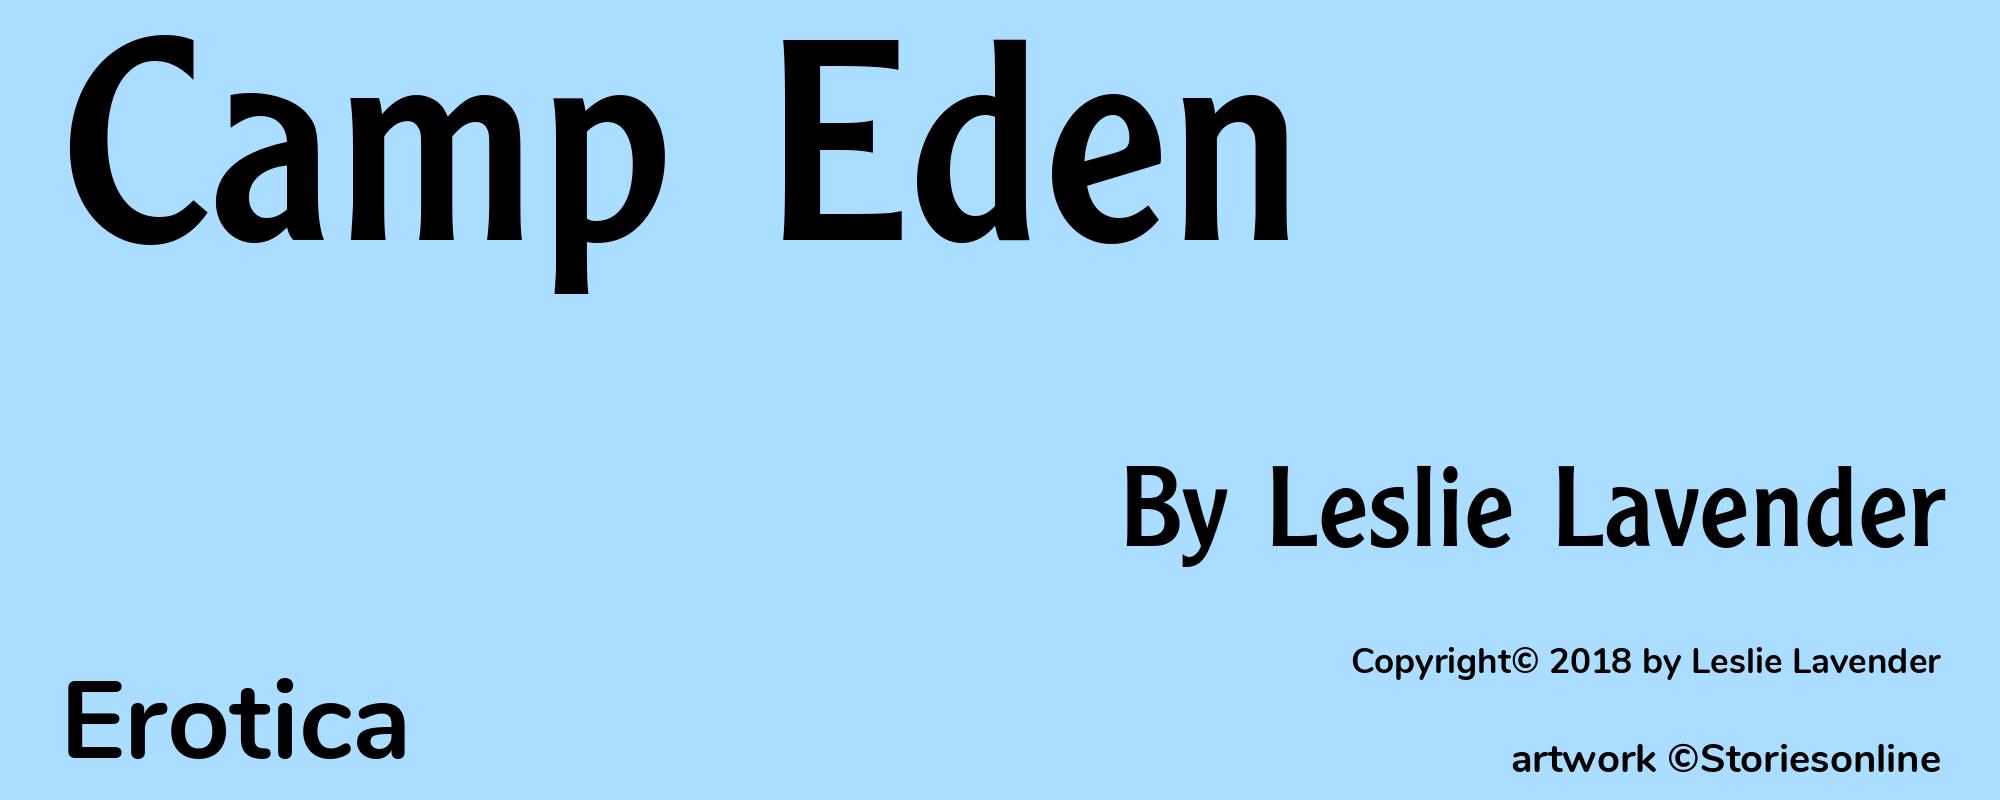 Camp Eden - Cover